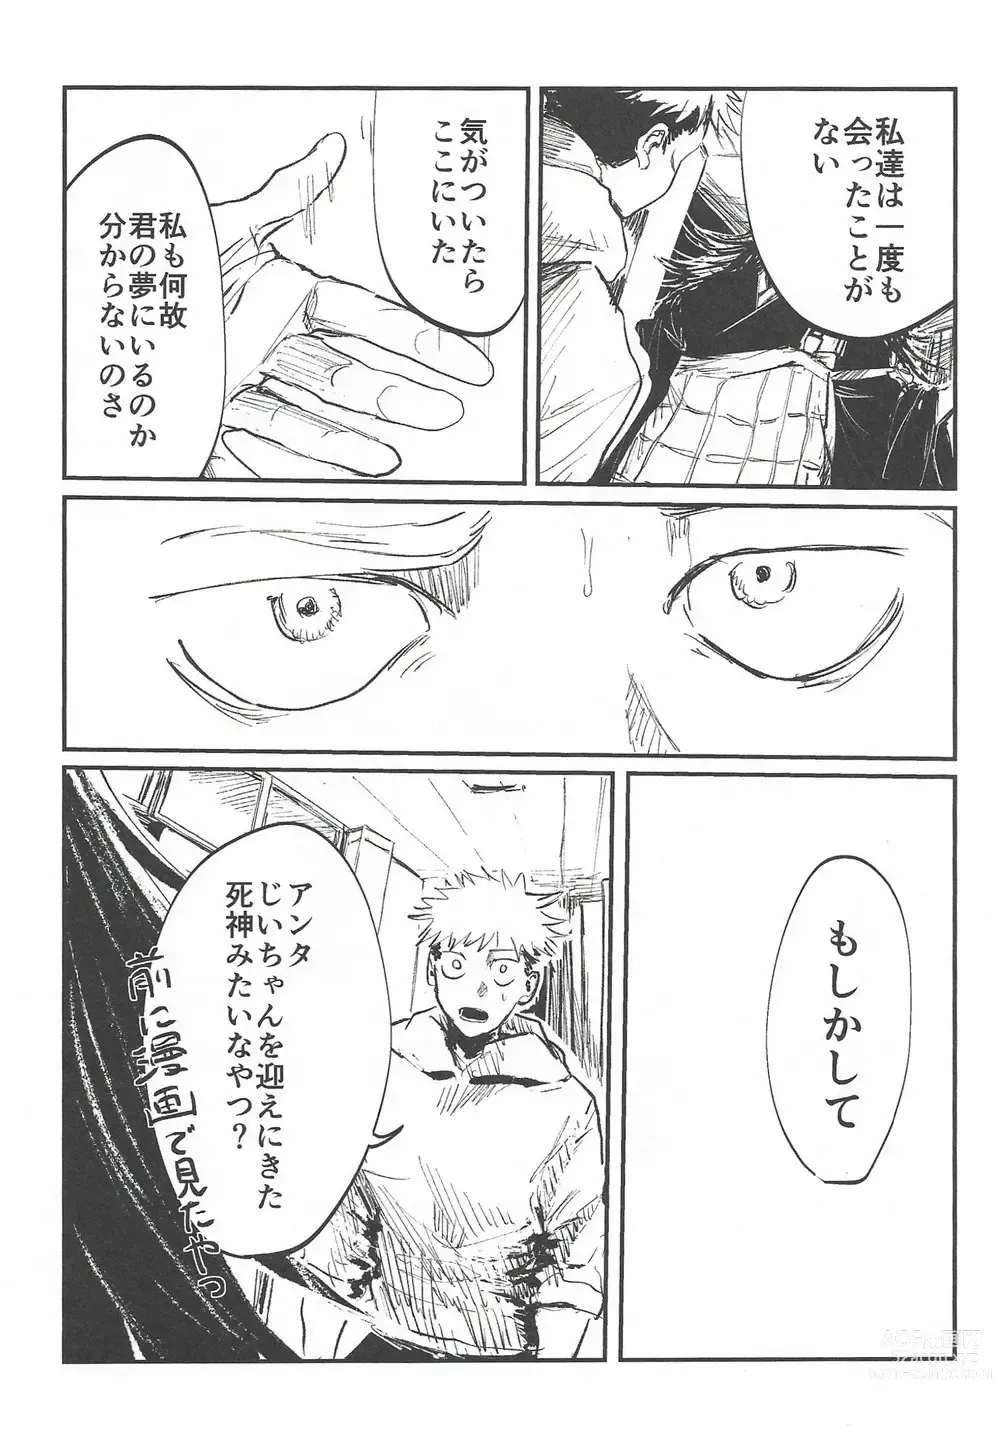 Page 6 of doujinshi Rakuen no Niwa